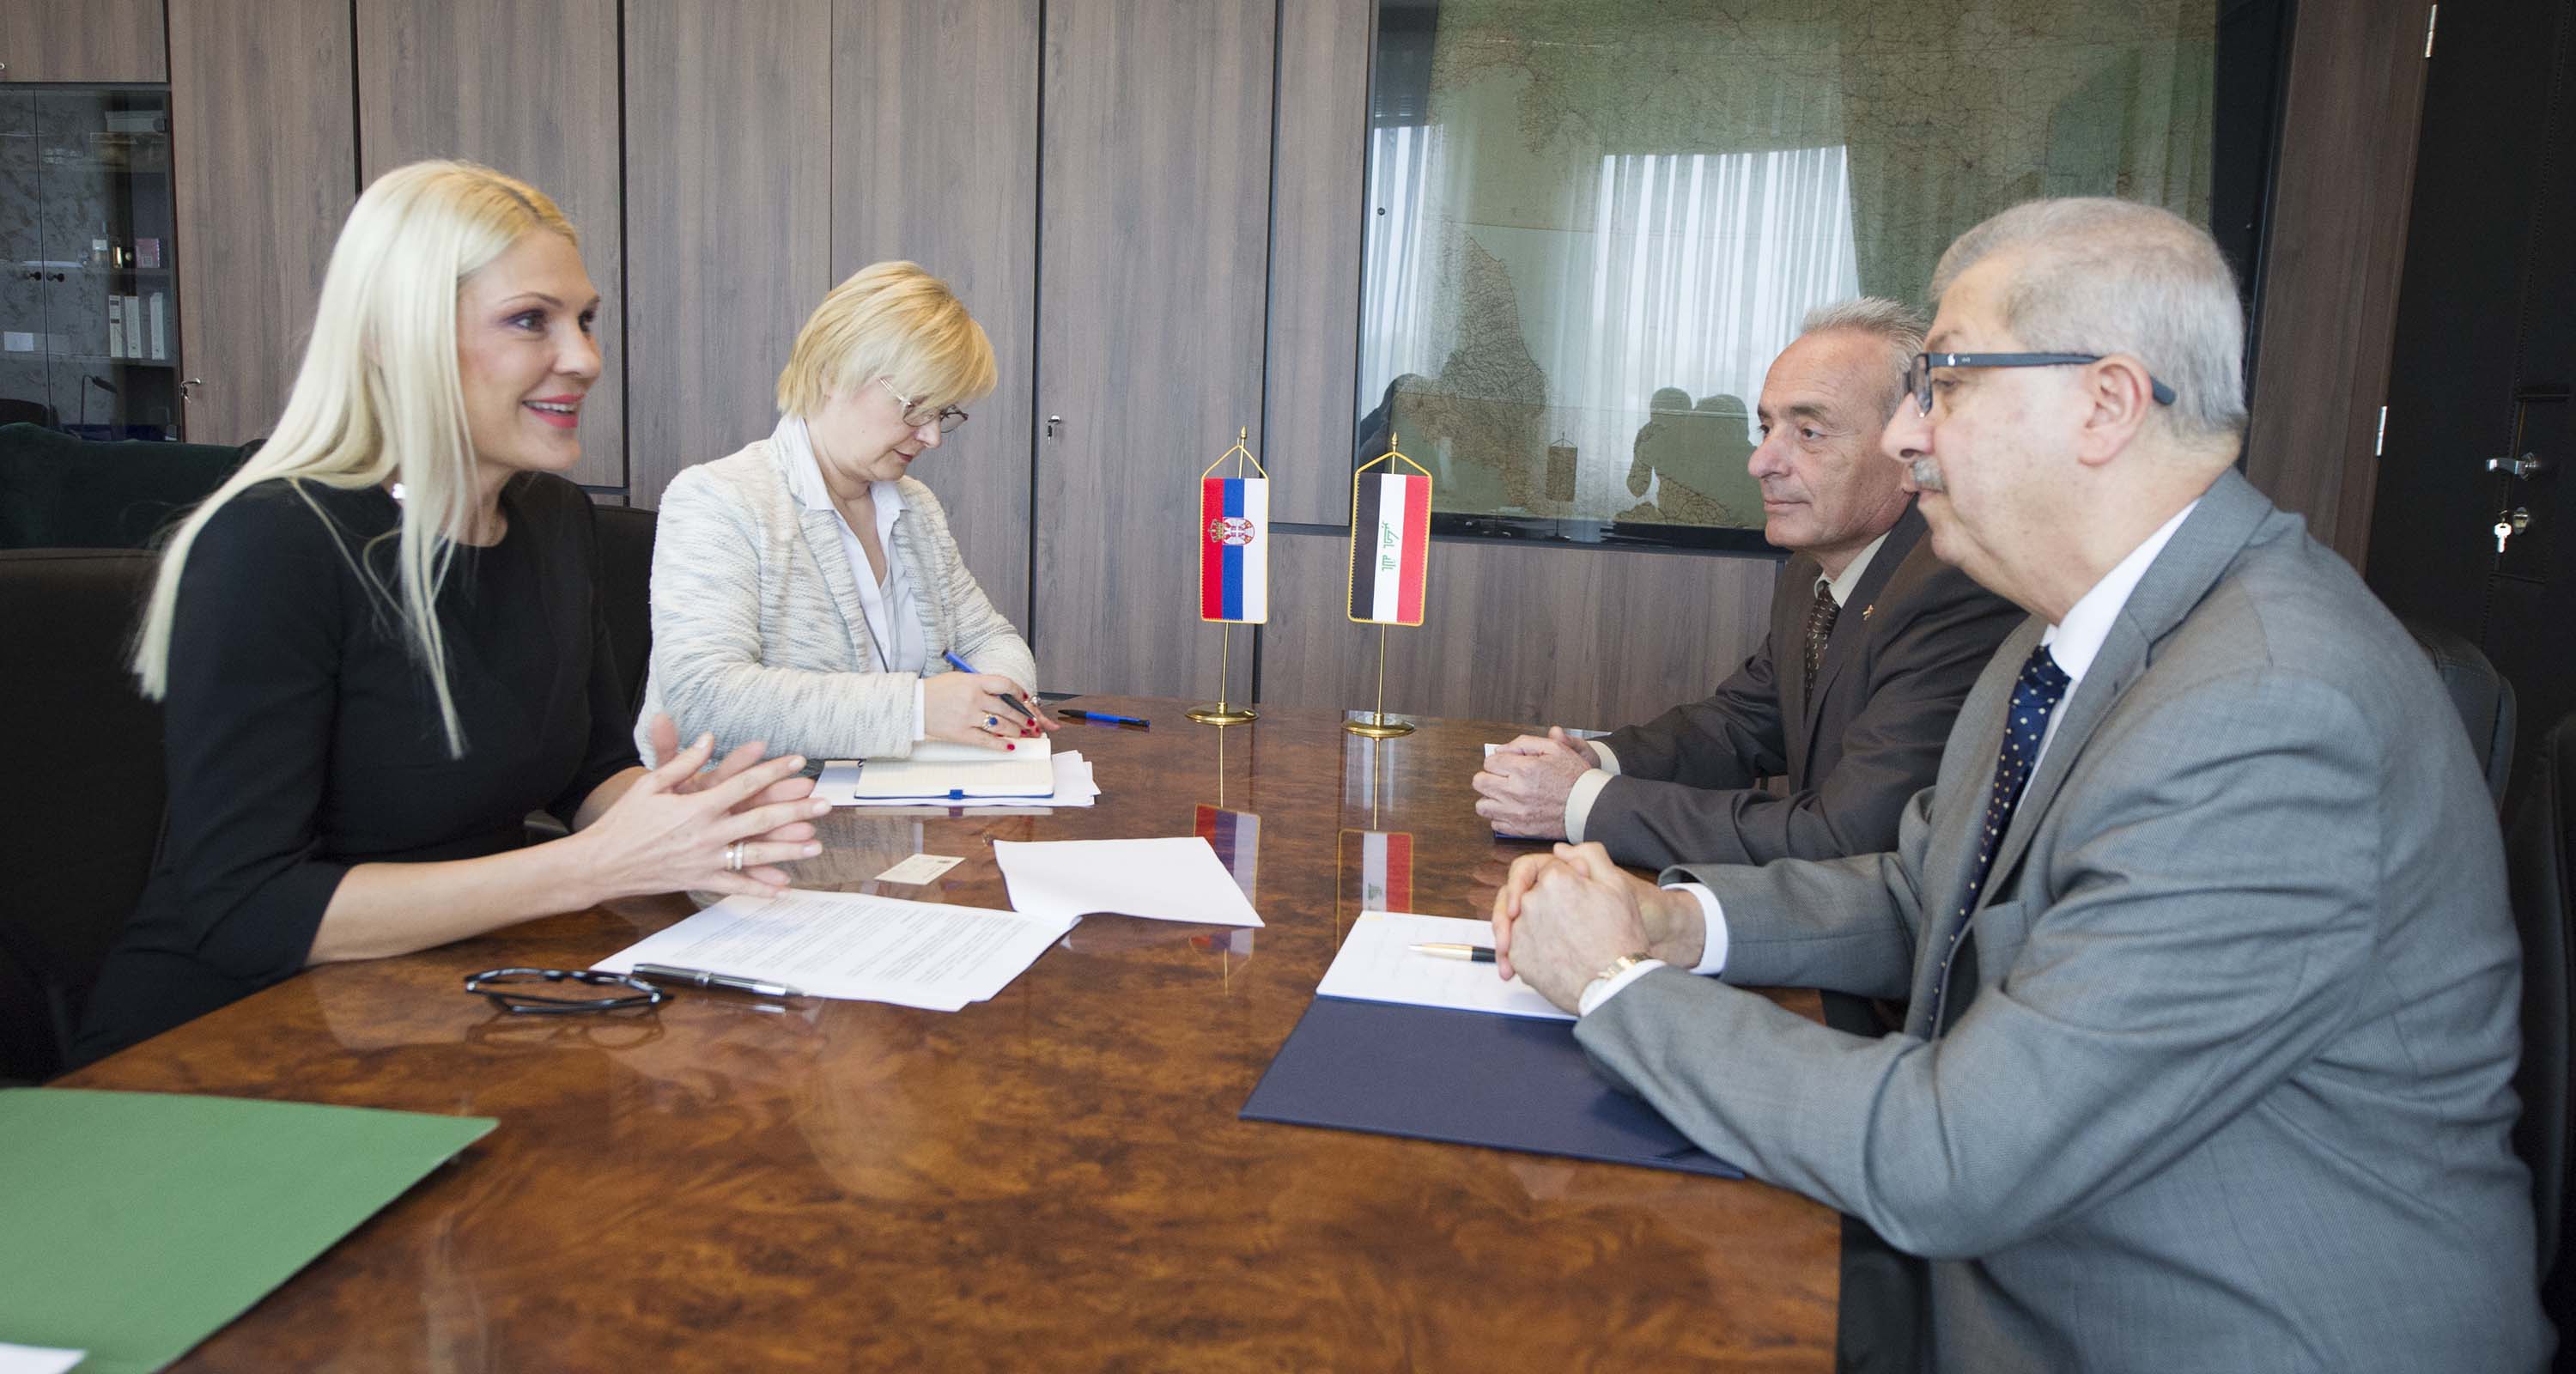 Државни секретар Поповић Ивковић  истакла је да кандидатура тзв. „Косова“ за чланство у Интерполу представља озбиљан преседан